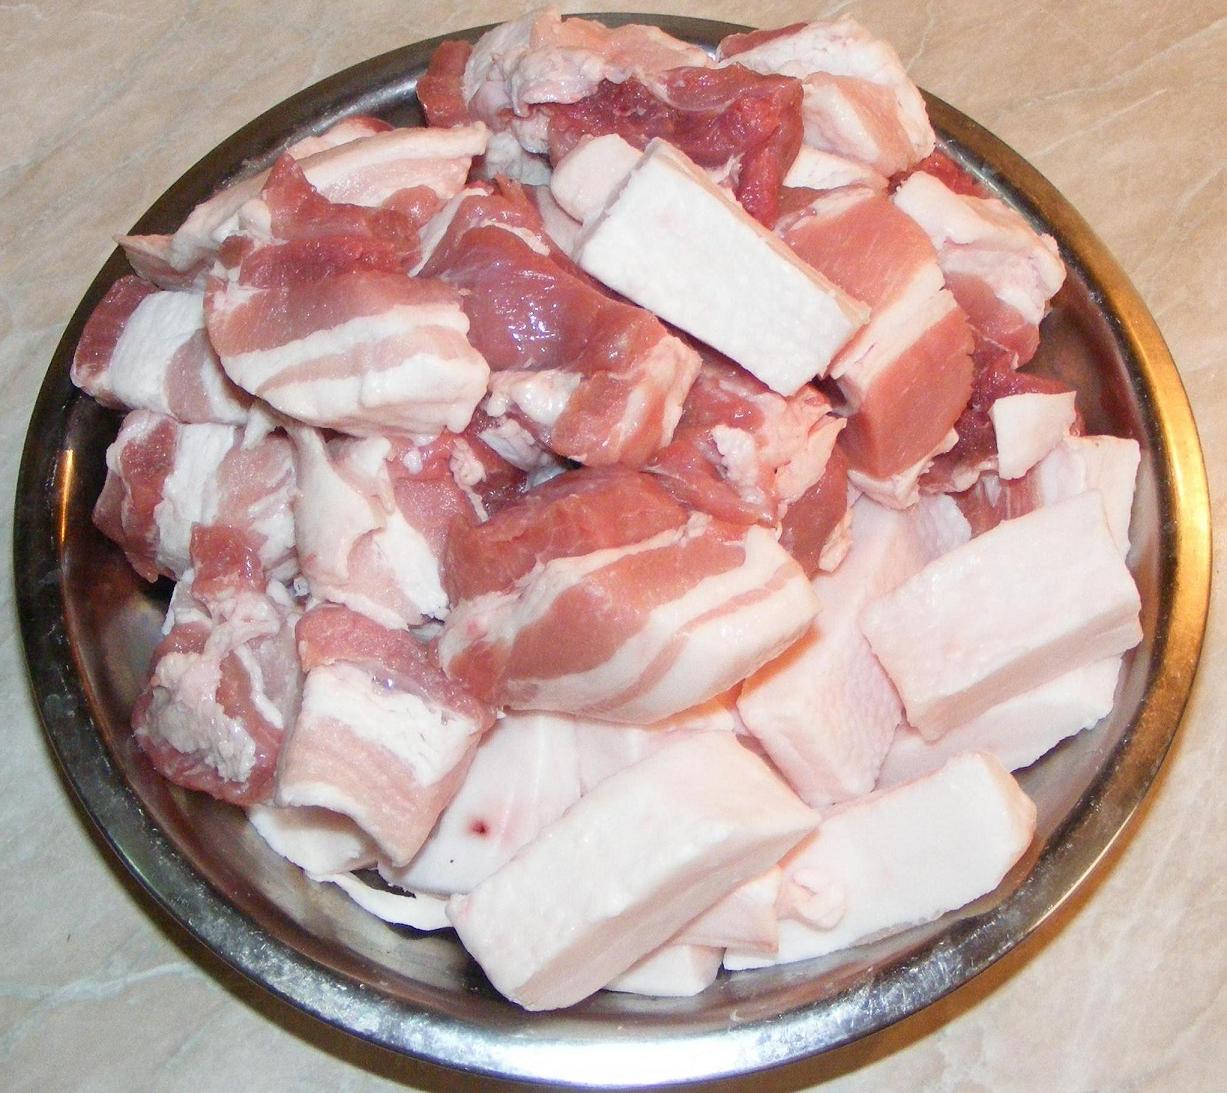 slimming w carne de porc